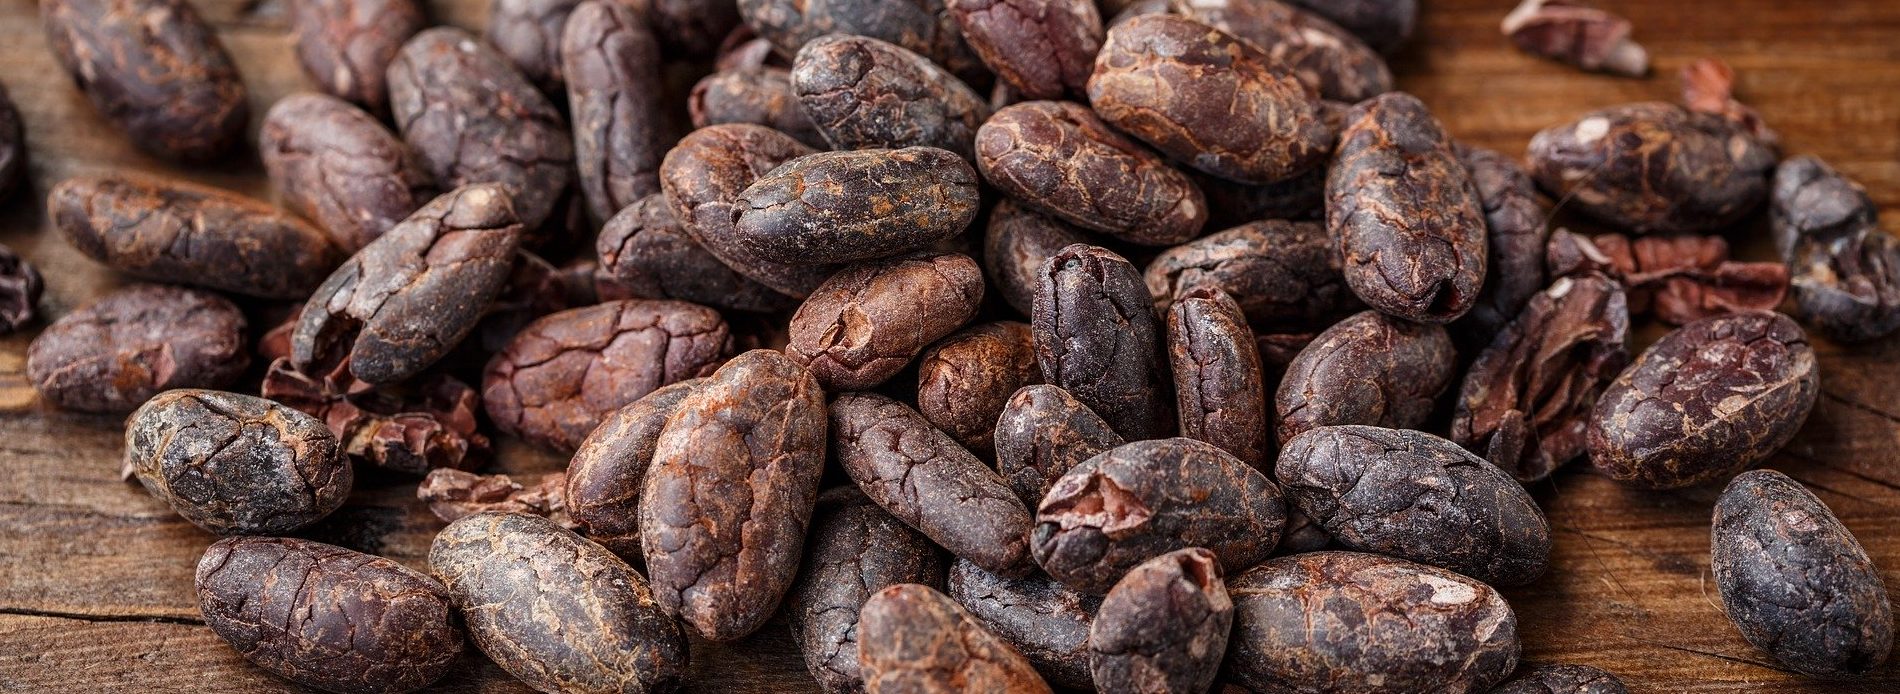 cacao-bean-2522918_1920